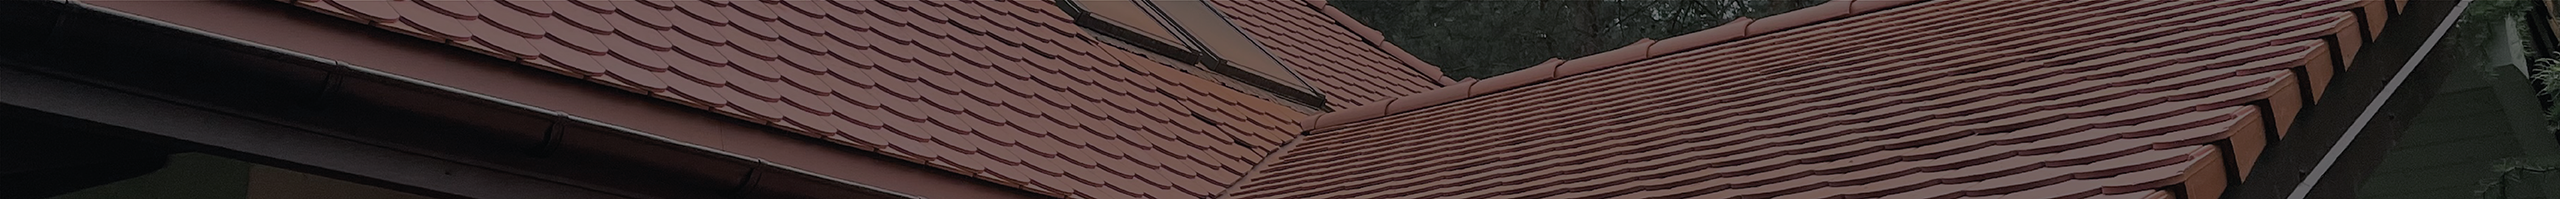 Pokrycia dachowe w kolorze ceglastym. Wysokiej jakości dachy Skierniewice.